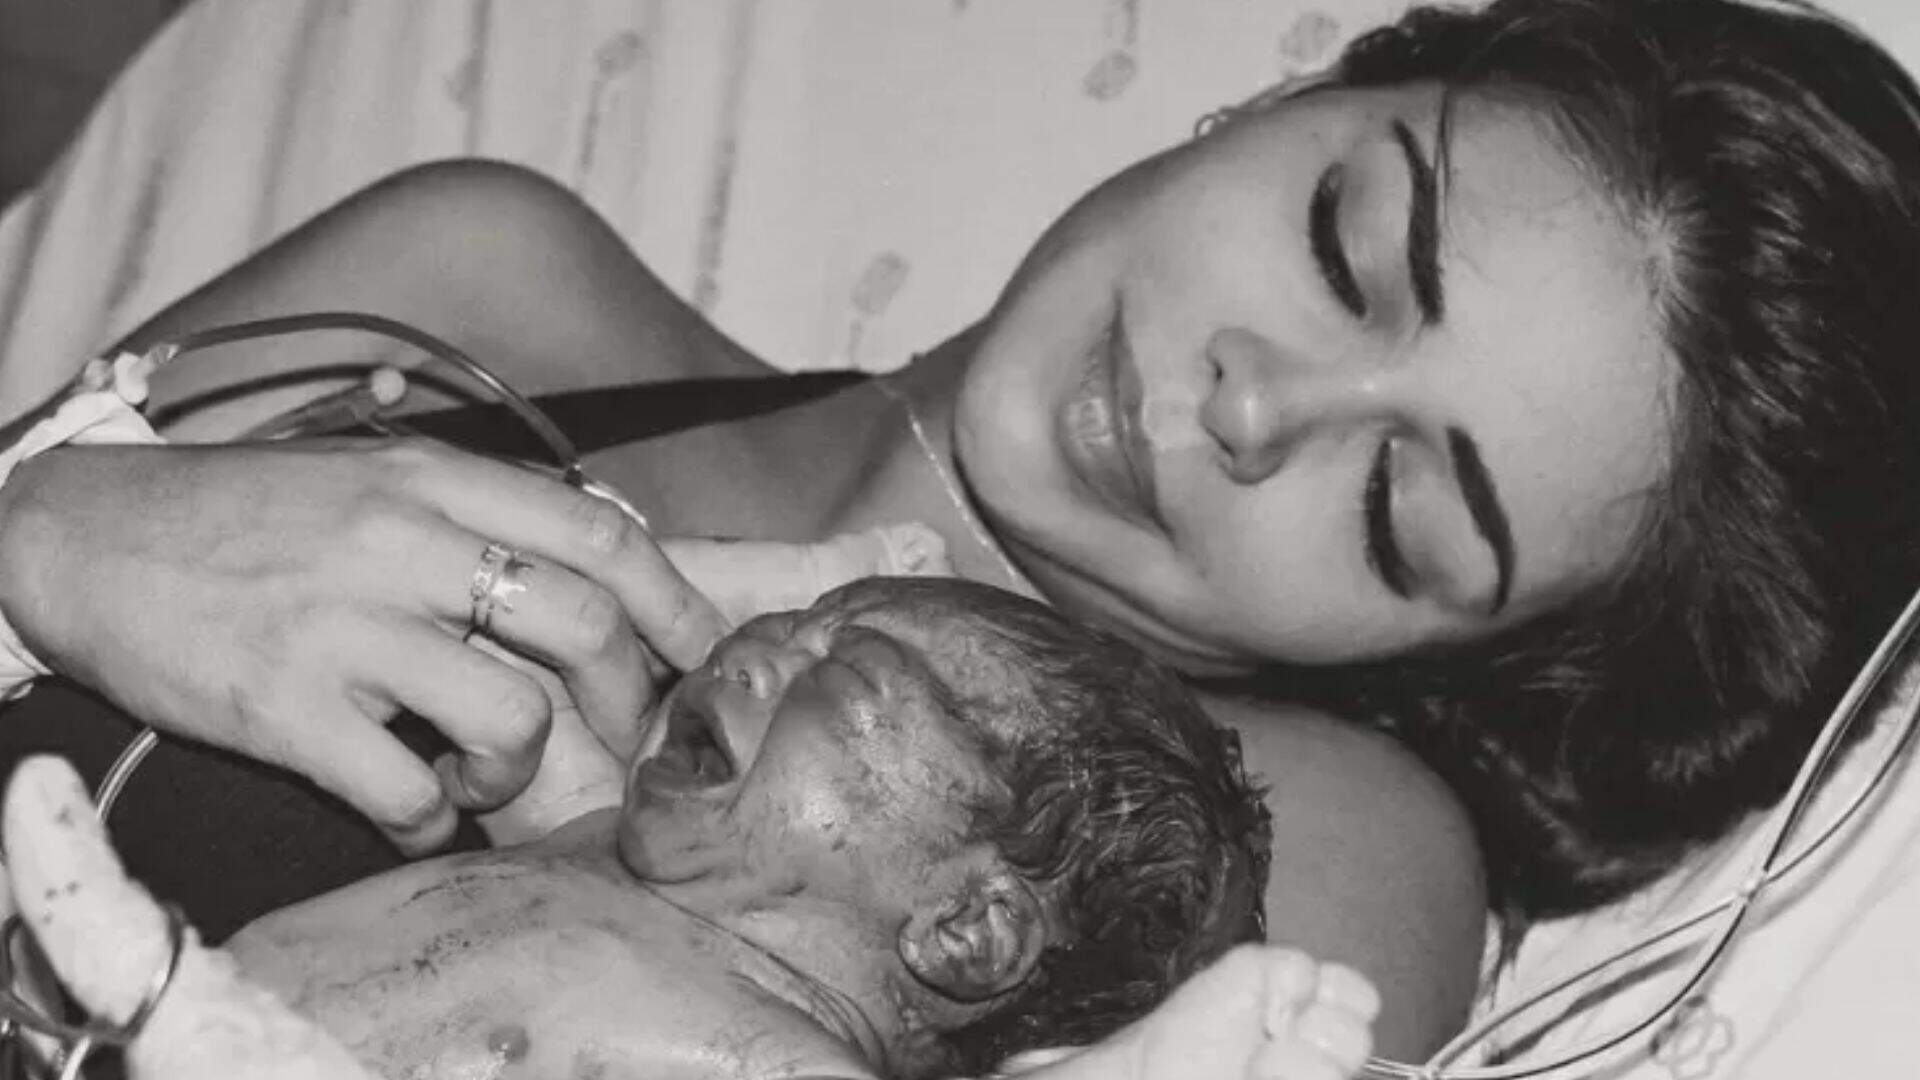 Morre filho de influenciadora uma semana após nascimento e perda gera comoção: “Guerreiro”